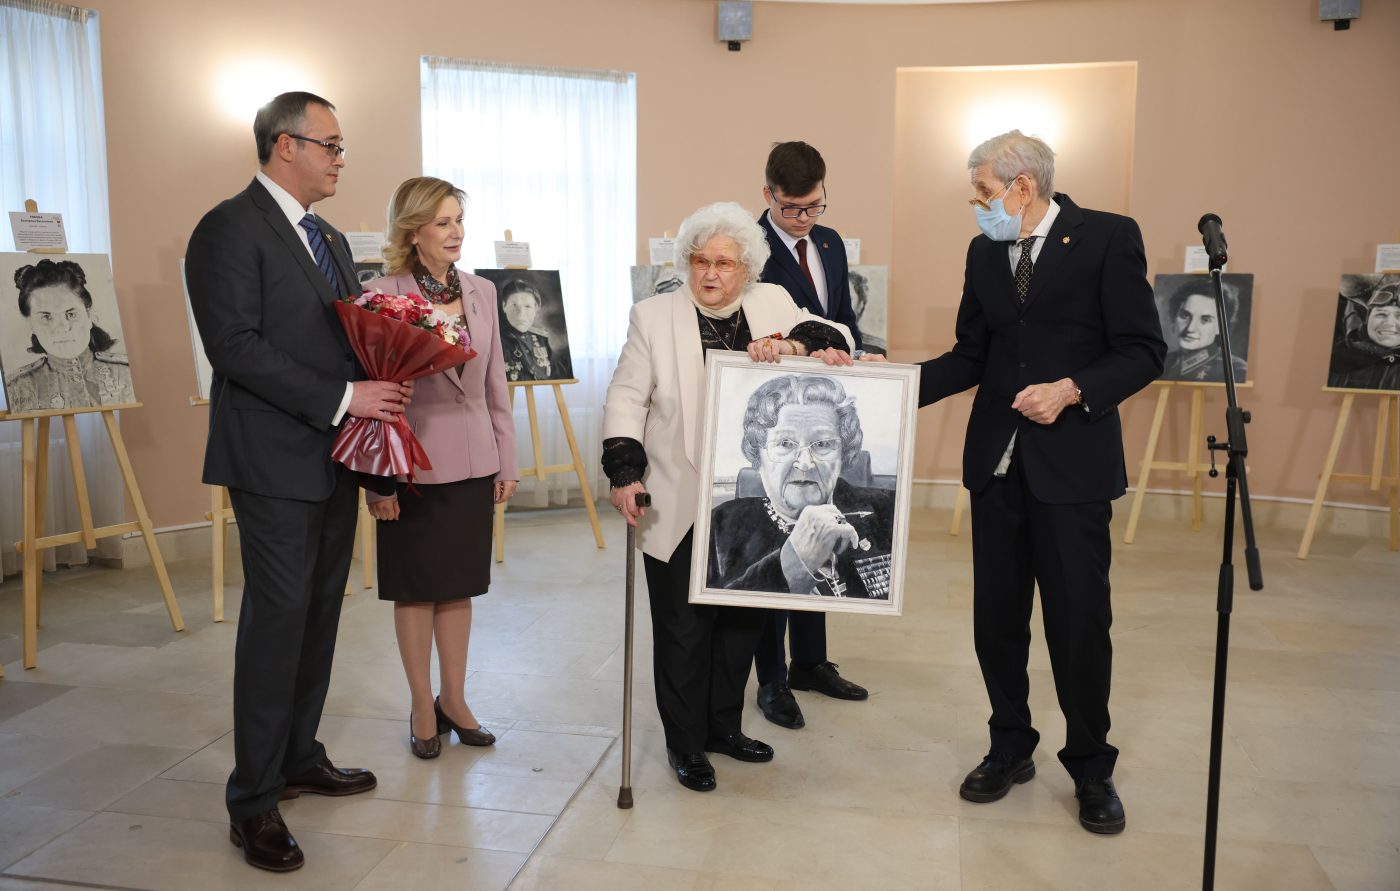 Героическая лётчица из Южного Медведкова пришла на выставку, где размещён её портрет